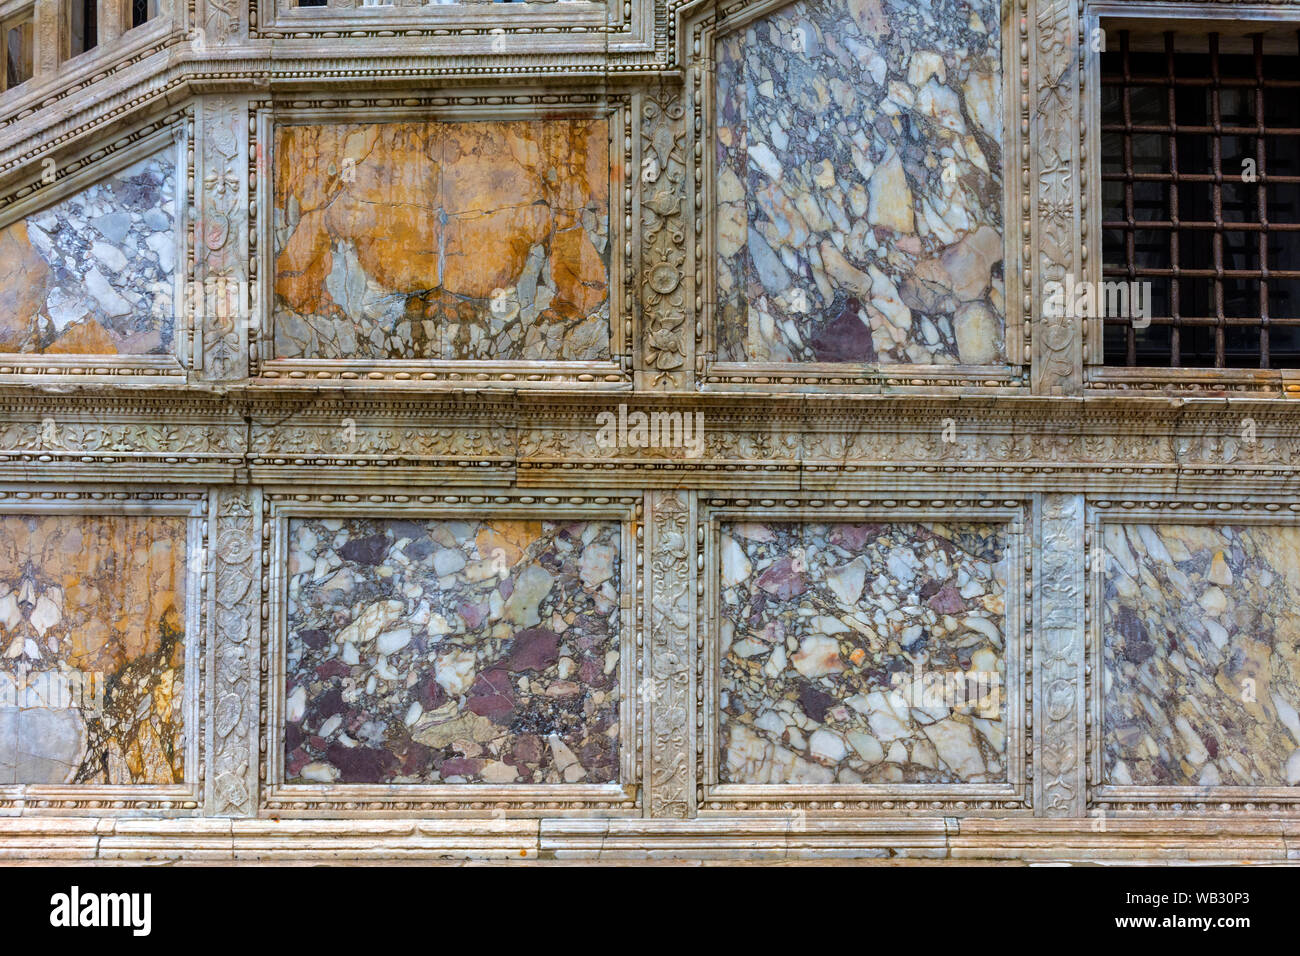 Revêtement en pierre sur le côté de l'Escalier du géant (Scala dei Giganti), dans la cour du palais des Doges (Palazzo Ducale), Venise, Italie Banque D'Images